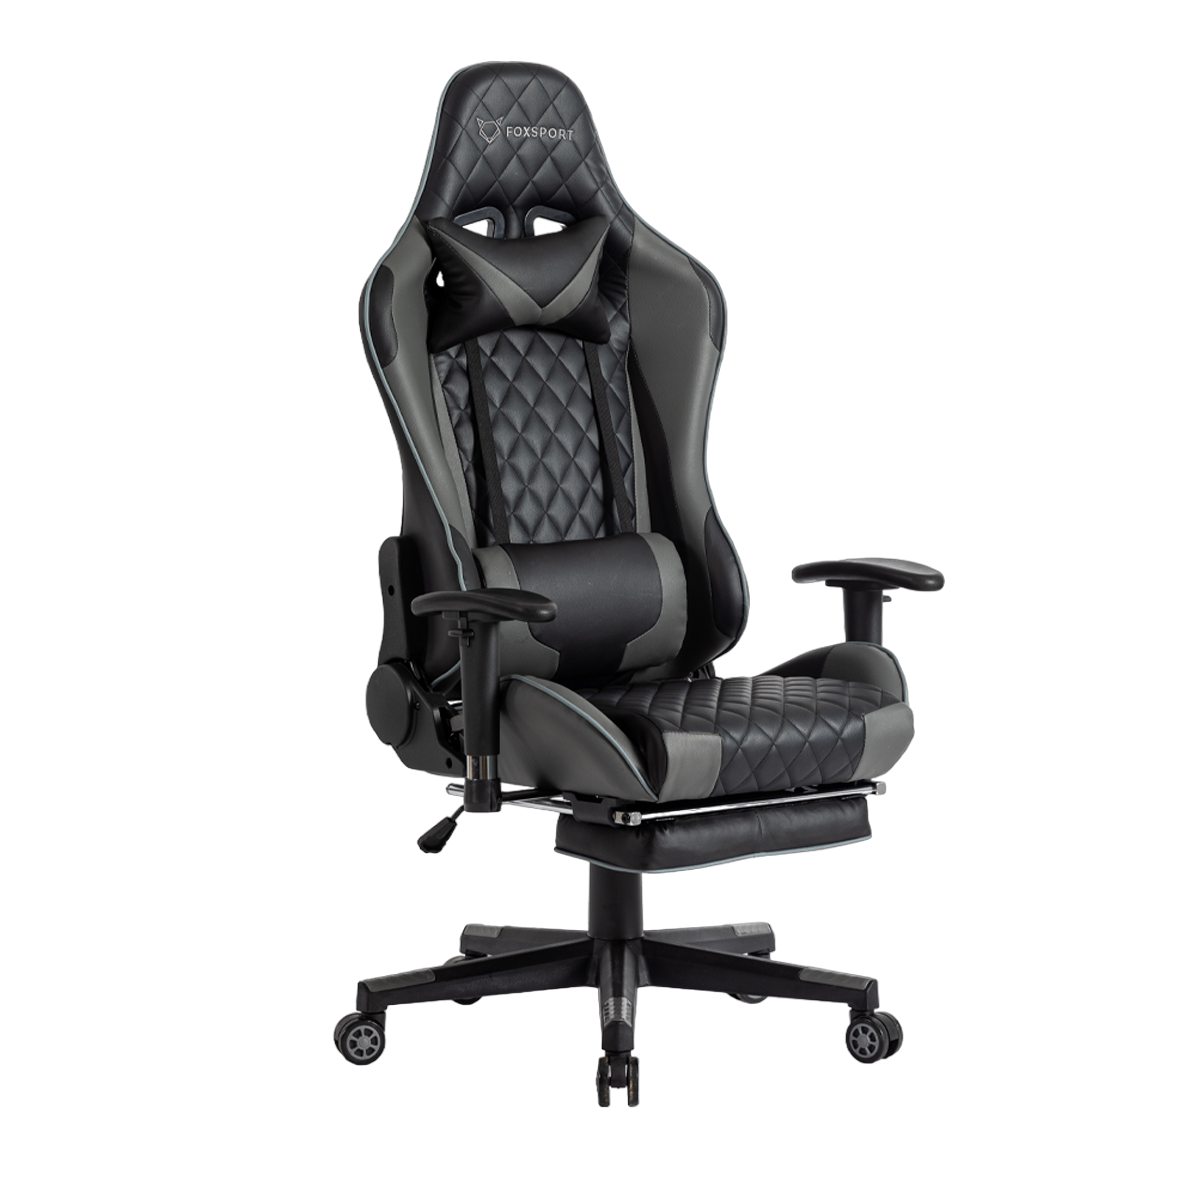 FOXSPORT Stuhl mit Beinstütze Gaming-Stuhl, Schwarz schwarz